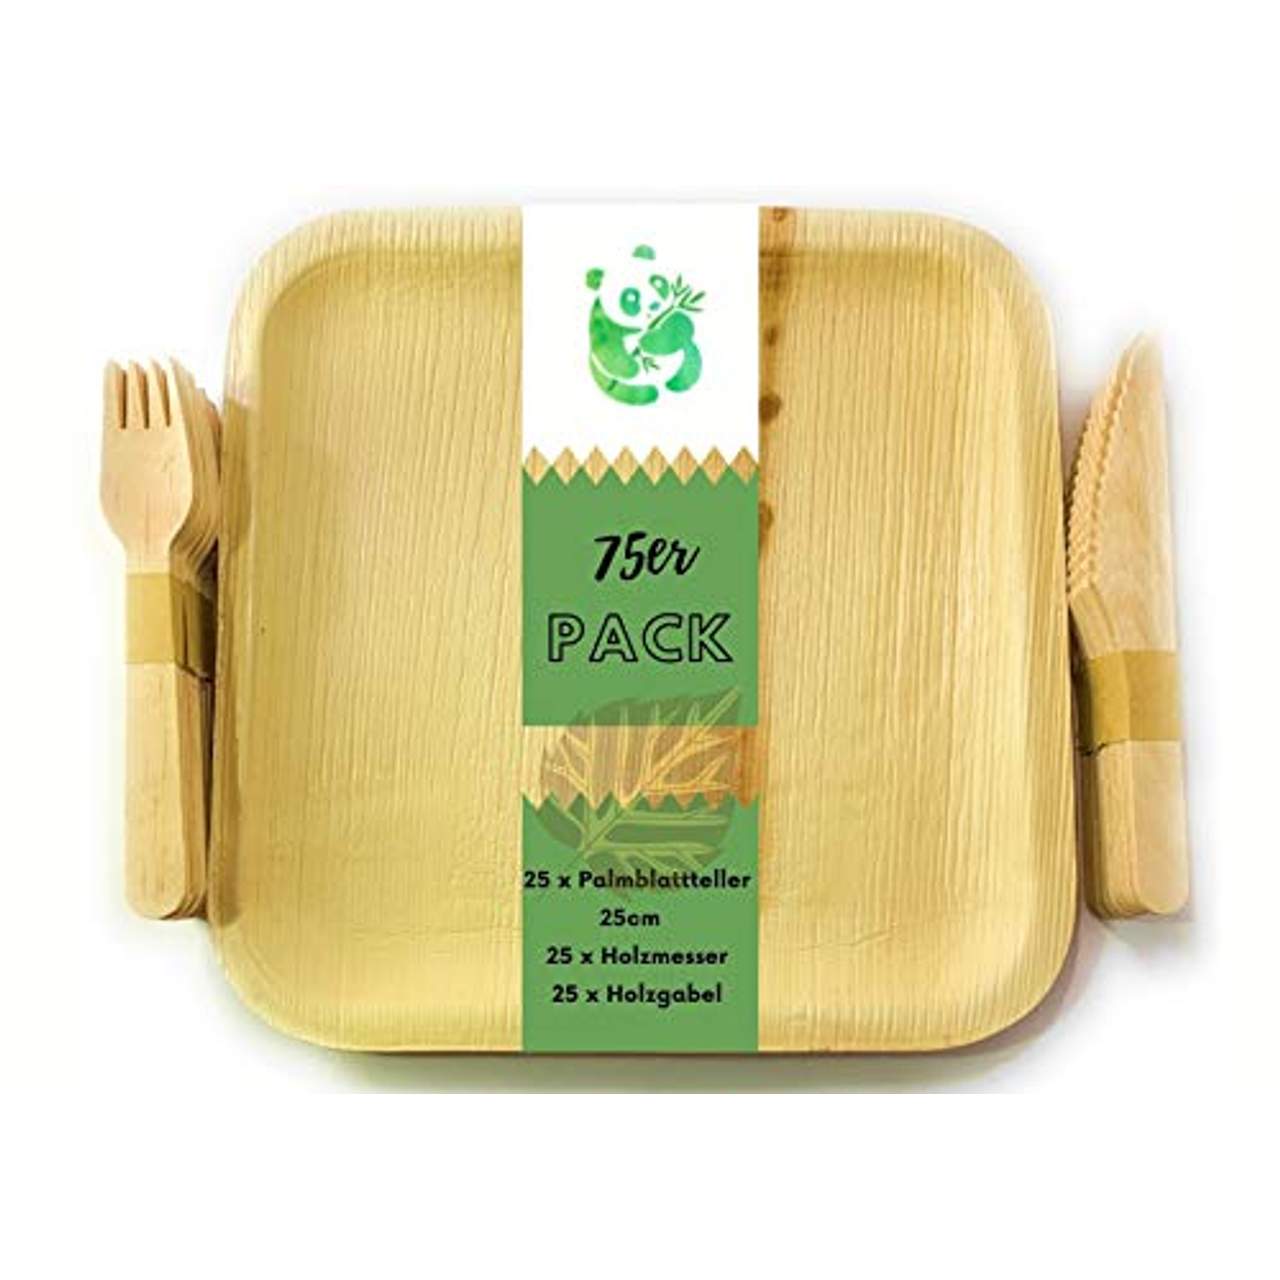 Grüner Panda 25stk Pack|25x25cm Palmblattteller